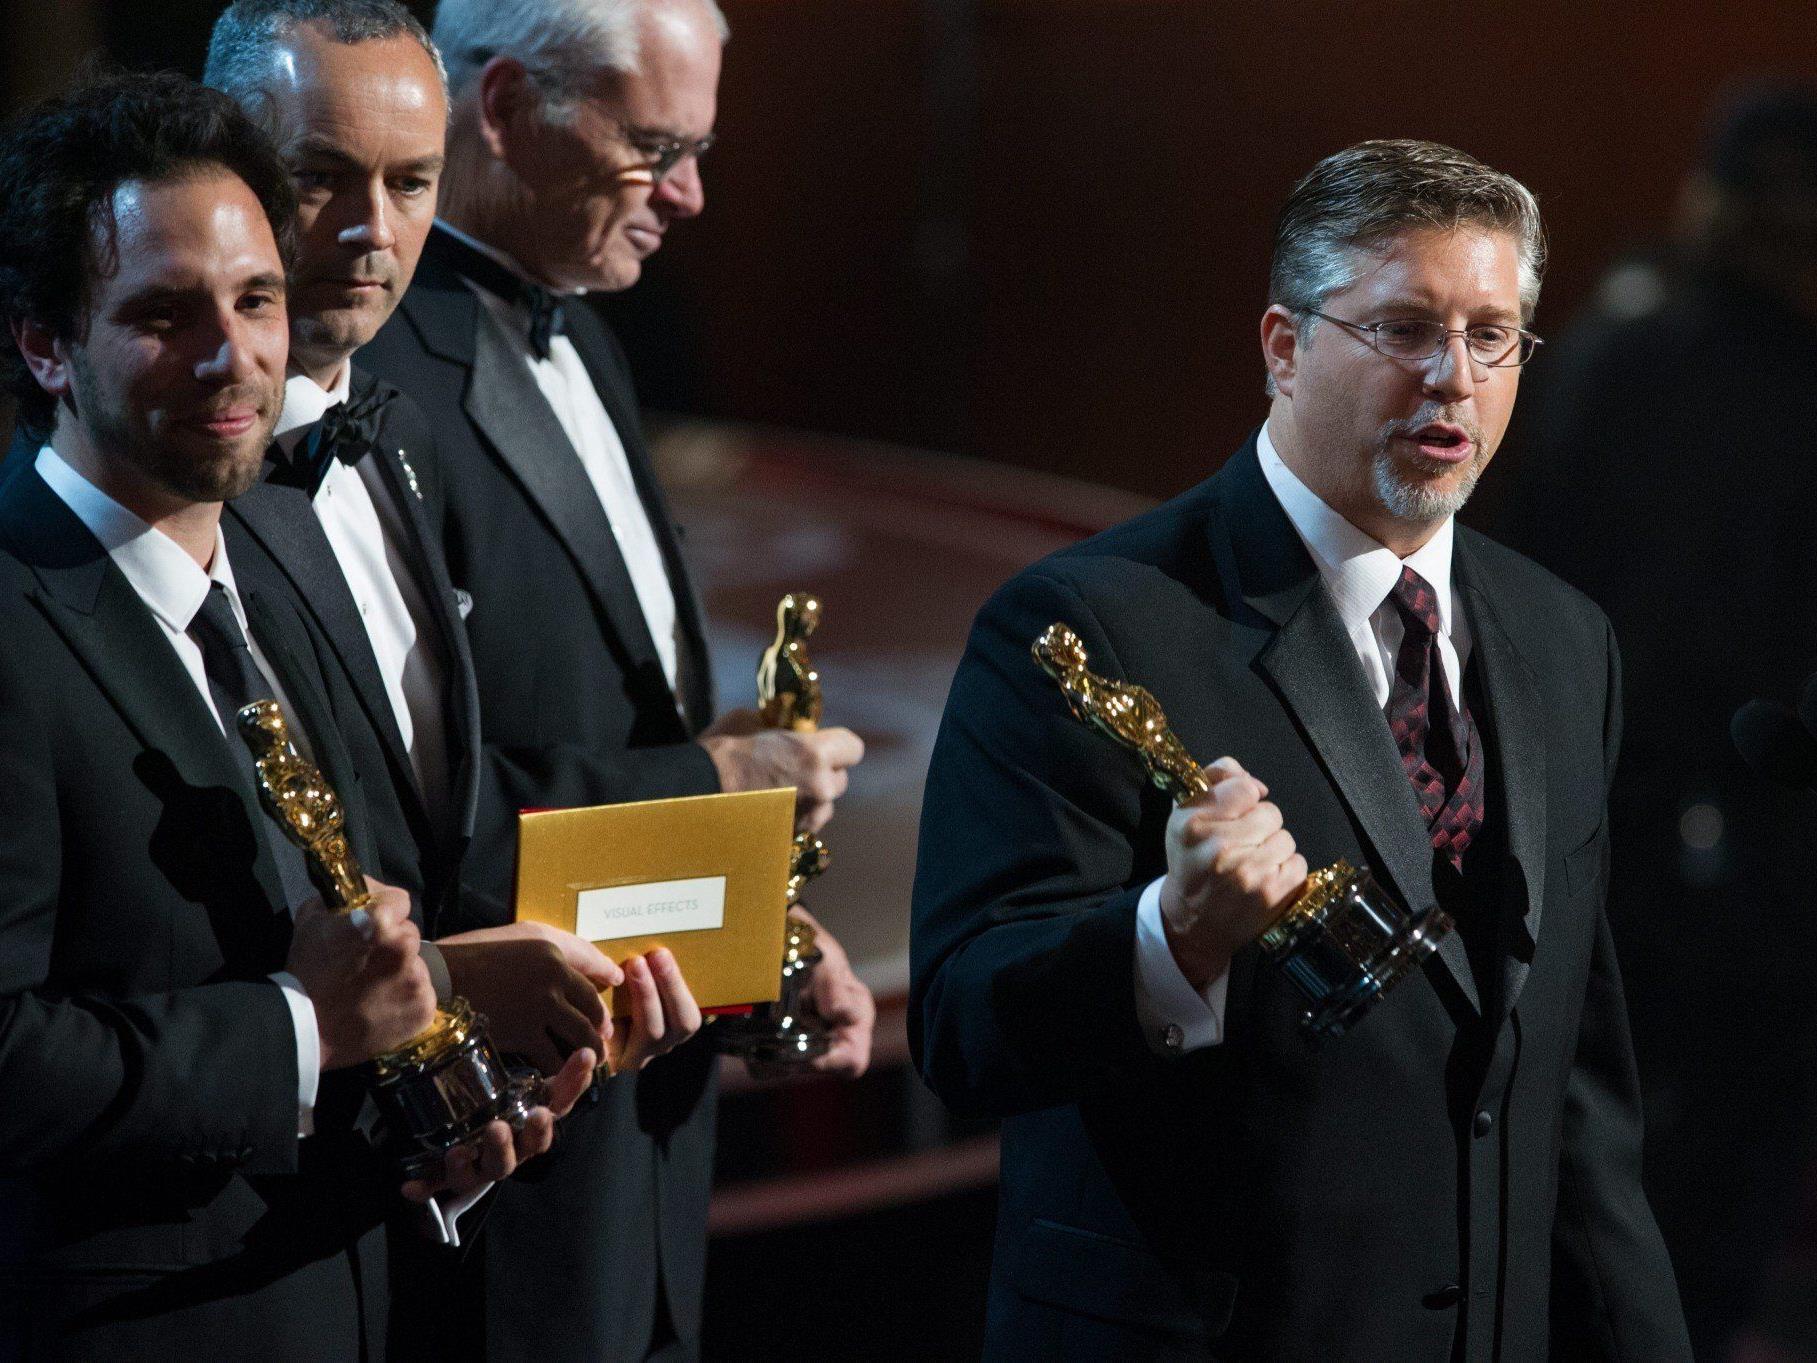 85. Oscars: Spezialeffektteam von "Life of Pi" protestiert bei Gala